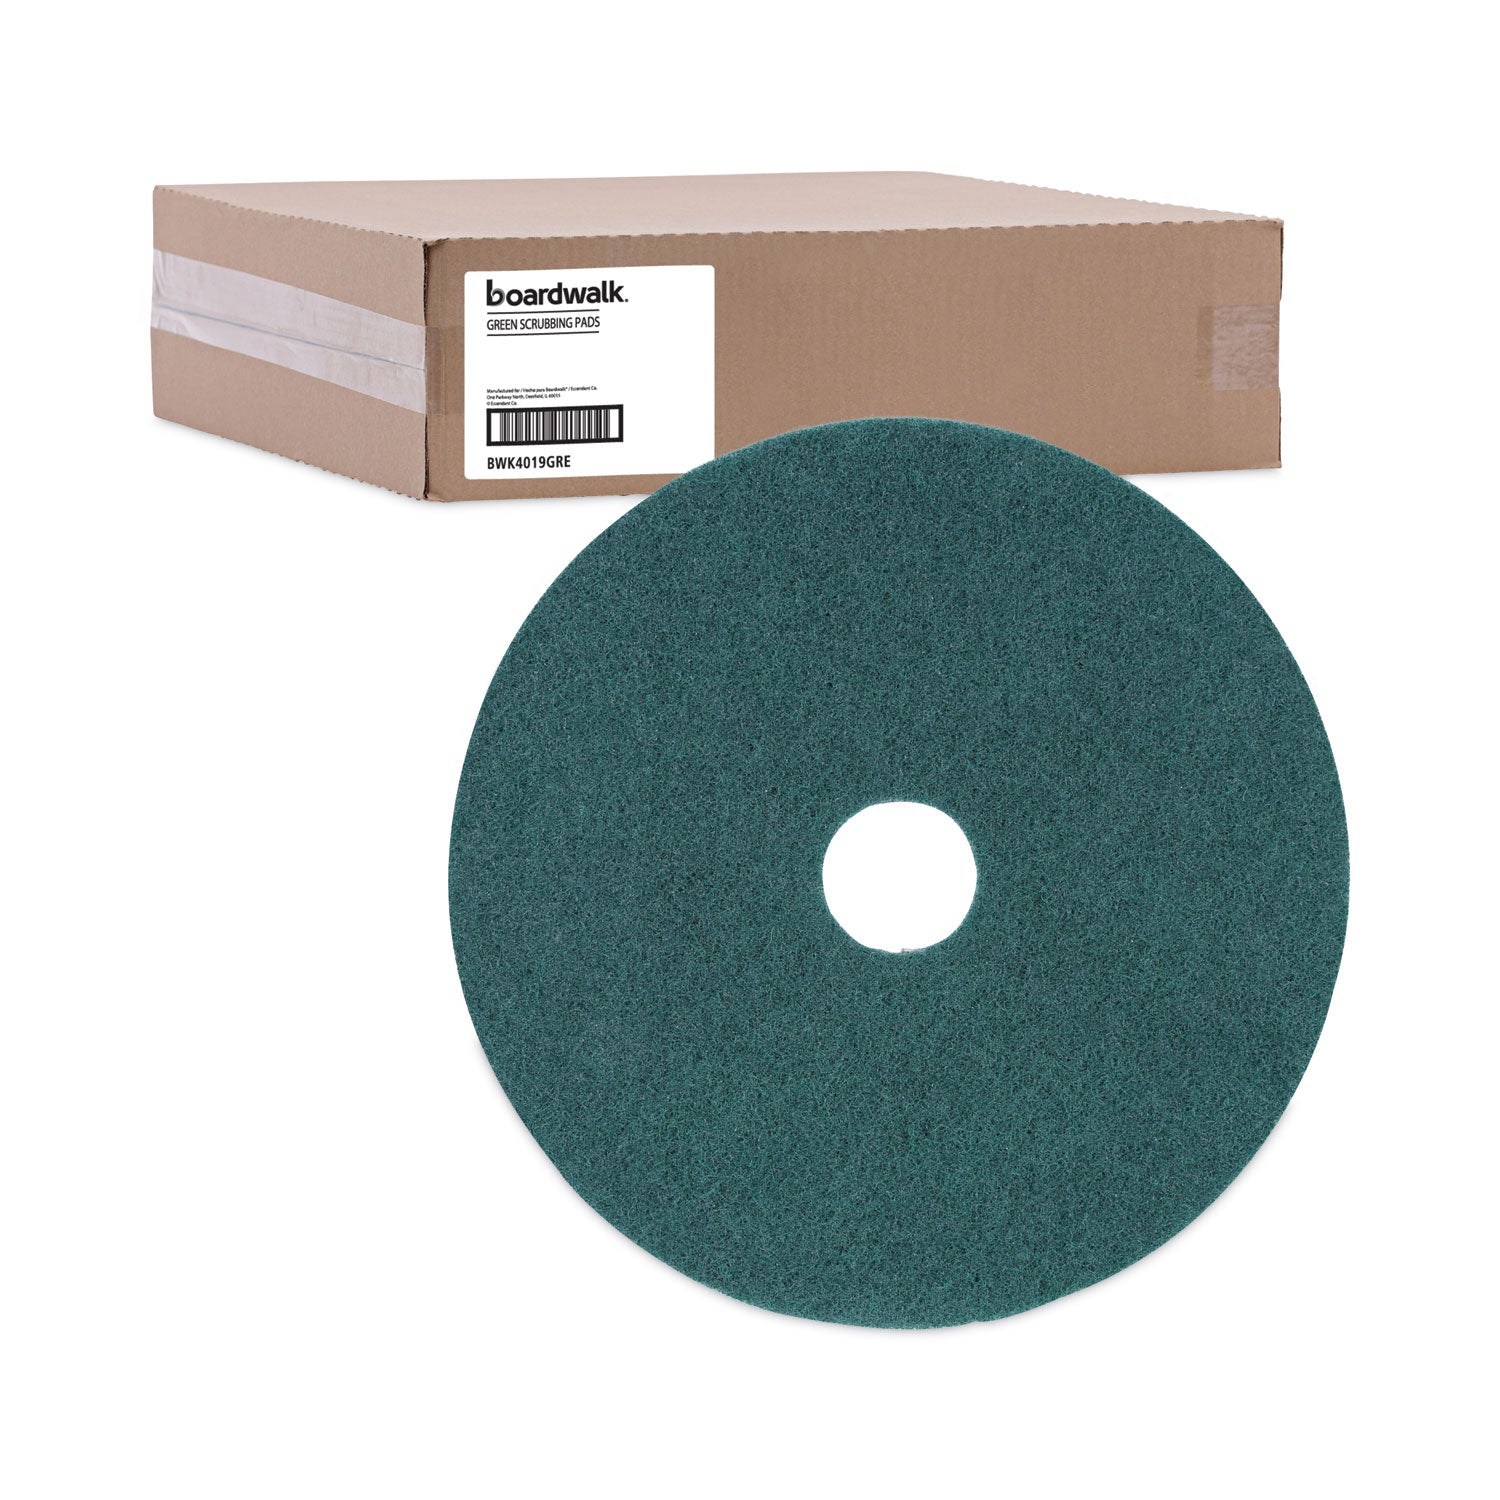 heavy-duty-scrubbing-floor-pads-19-diameter-green-5-carton_bwk4019gre - 5